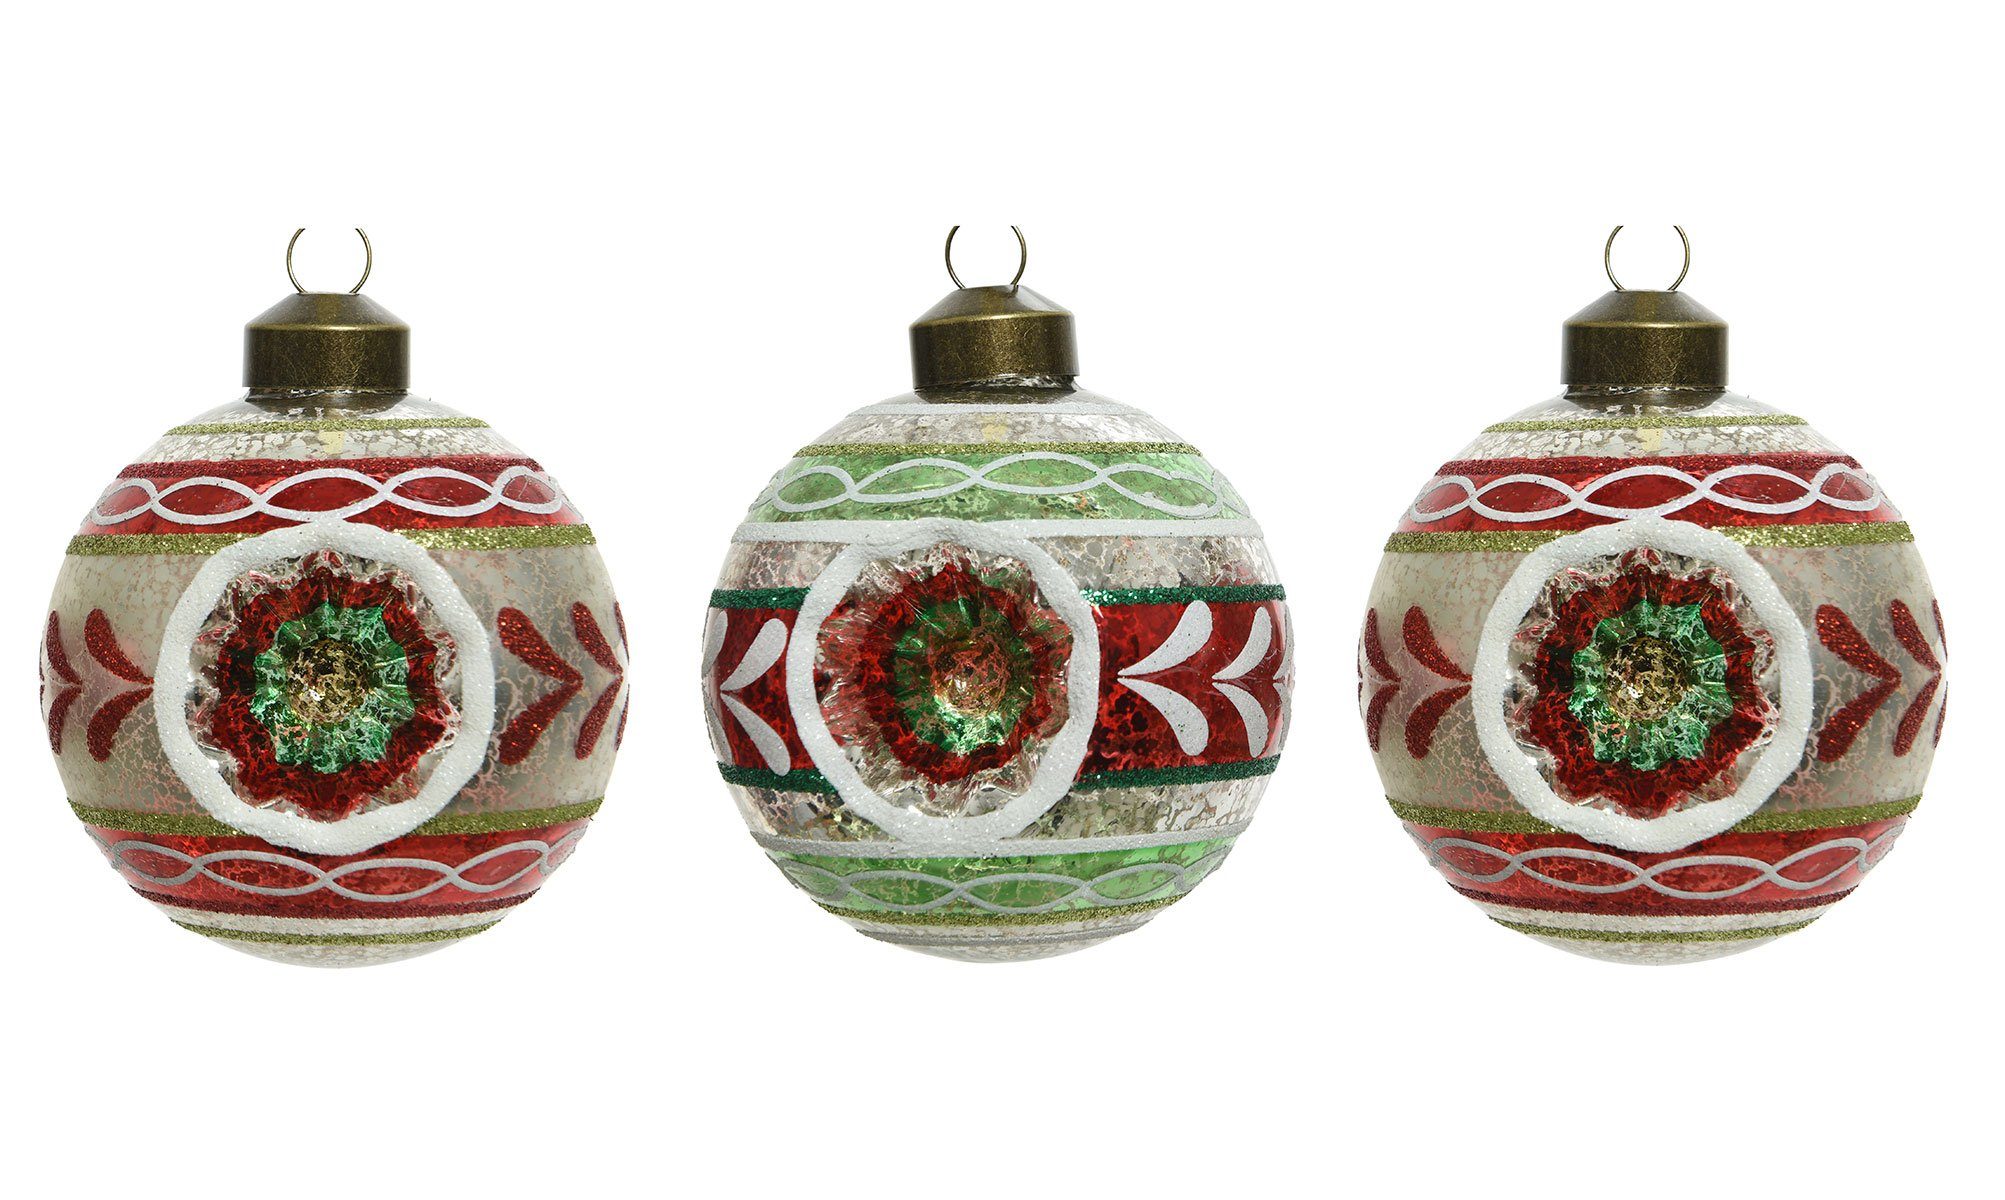 Decoris season decorations Christbaumschmuck, Weihnachtskugeln Glas mit Ornamenten Nostalgie 8cm rot / grün, 3er Set